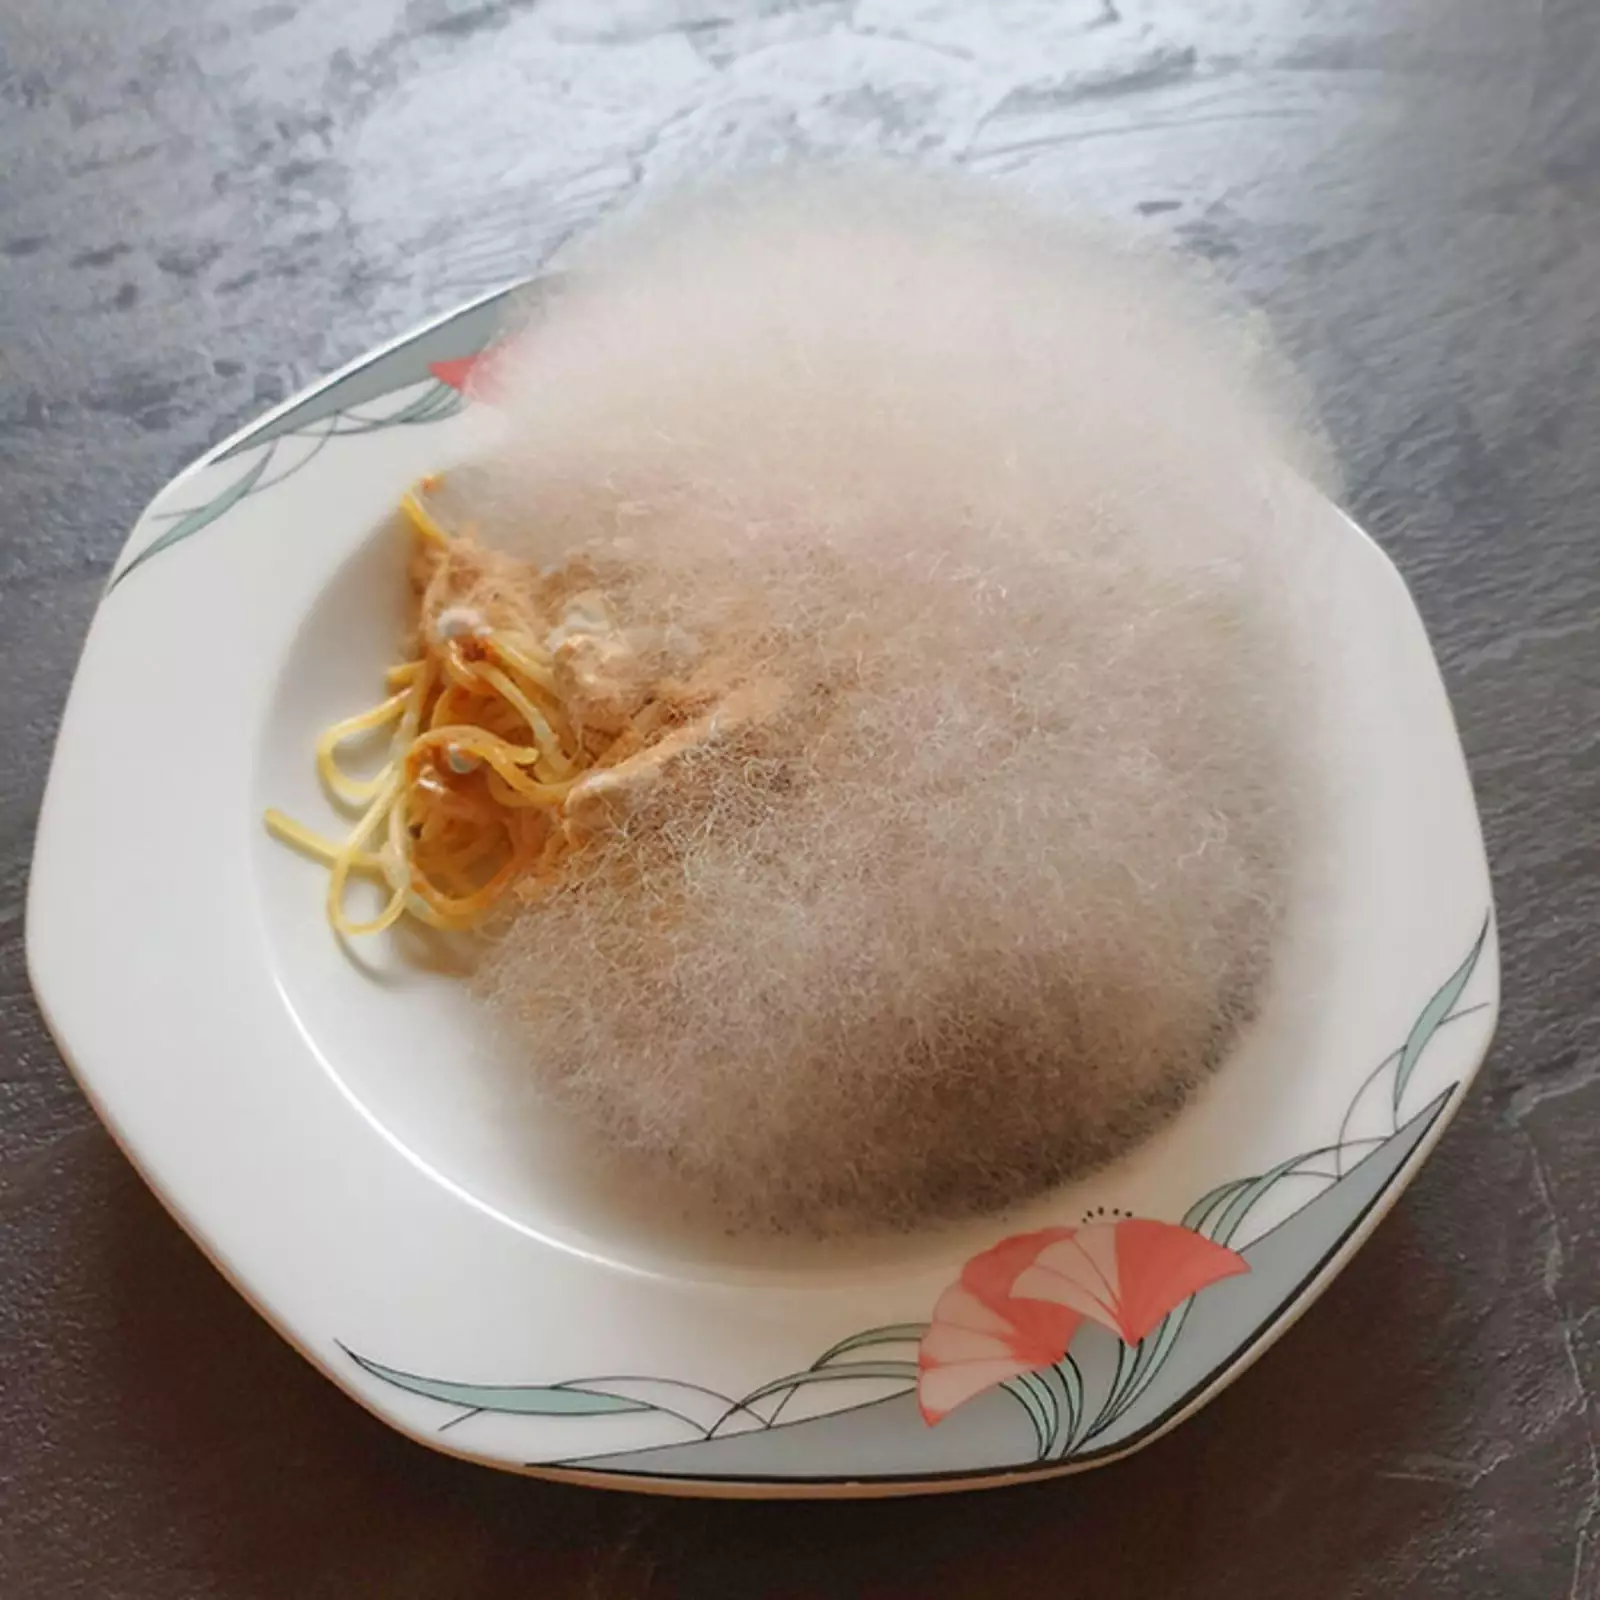 "Забыл спагетти с грибами в микроволновке на неделю. Теперь это пушистый шарик плесени".